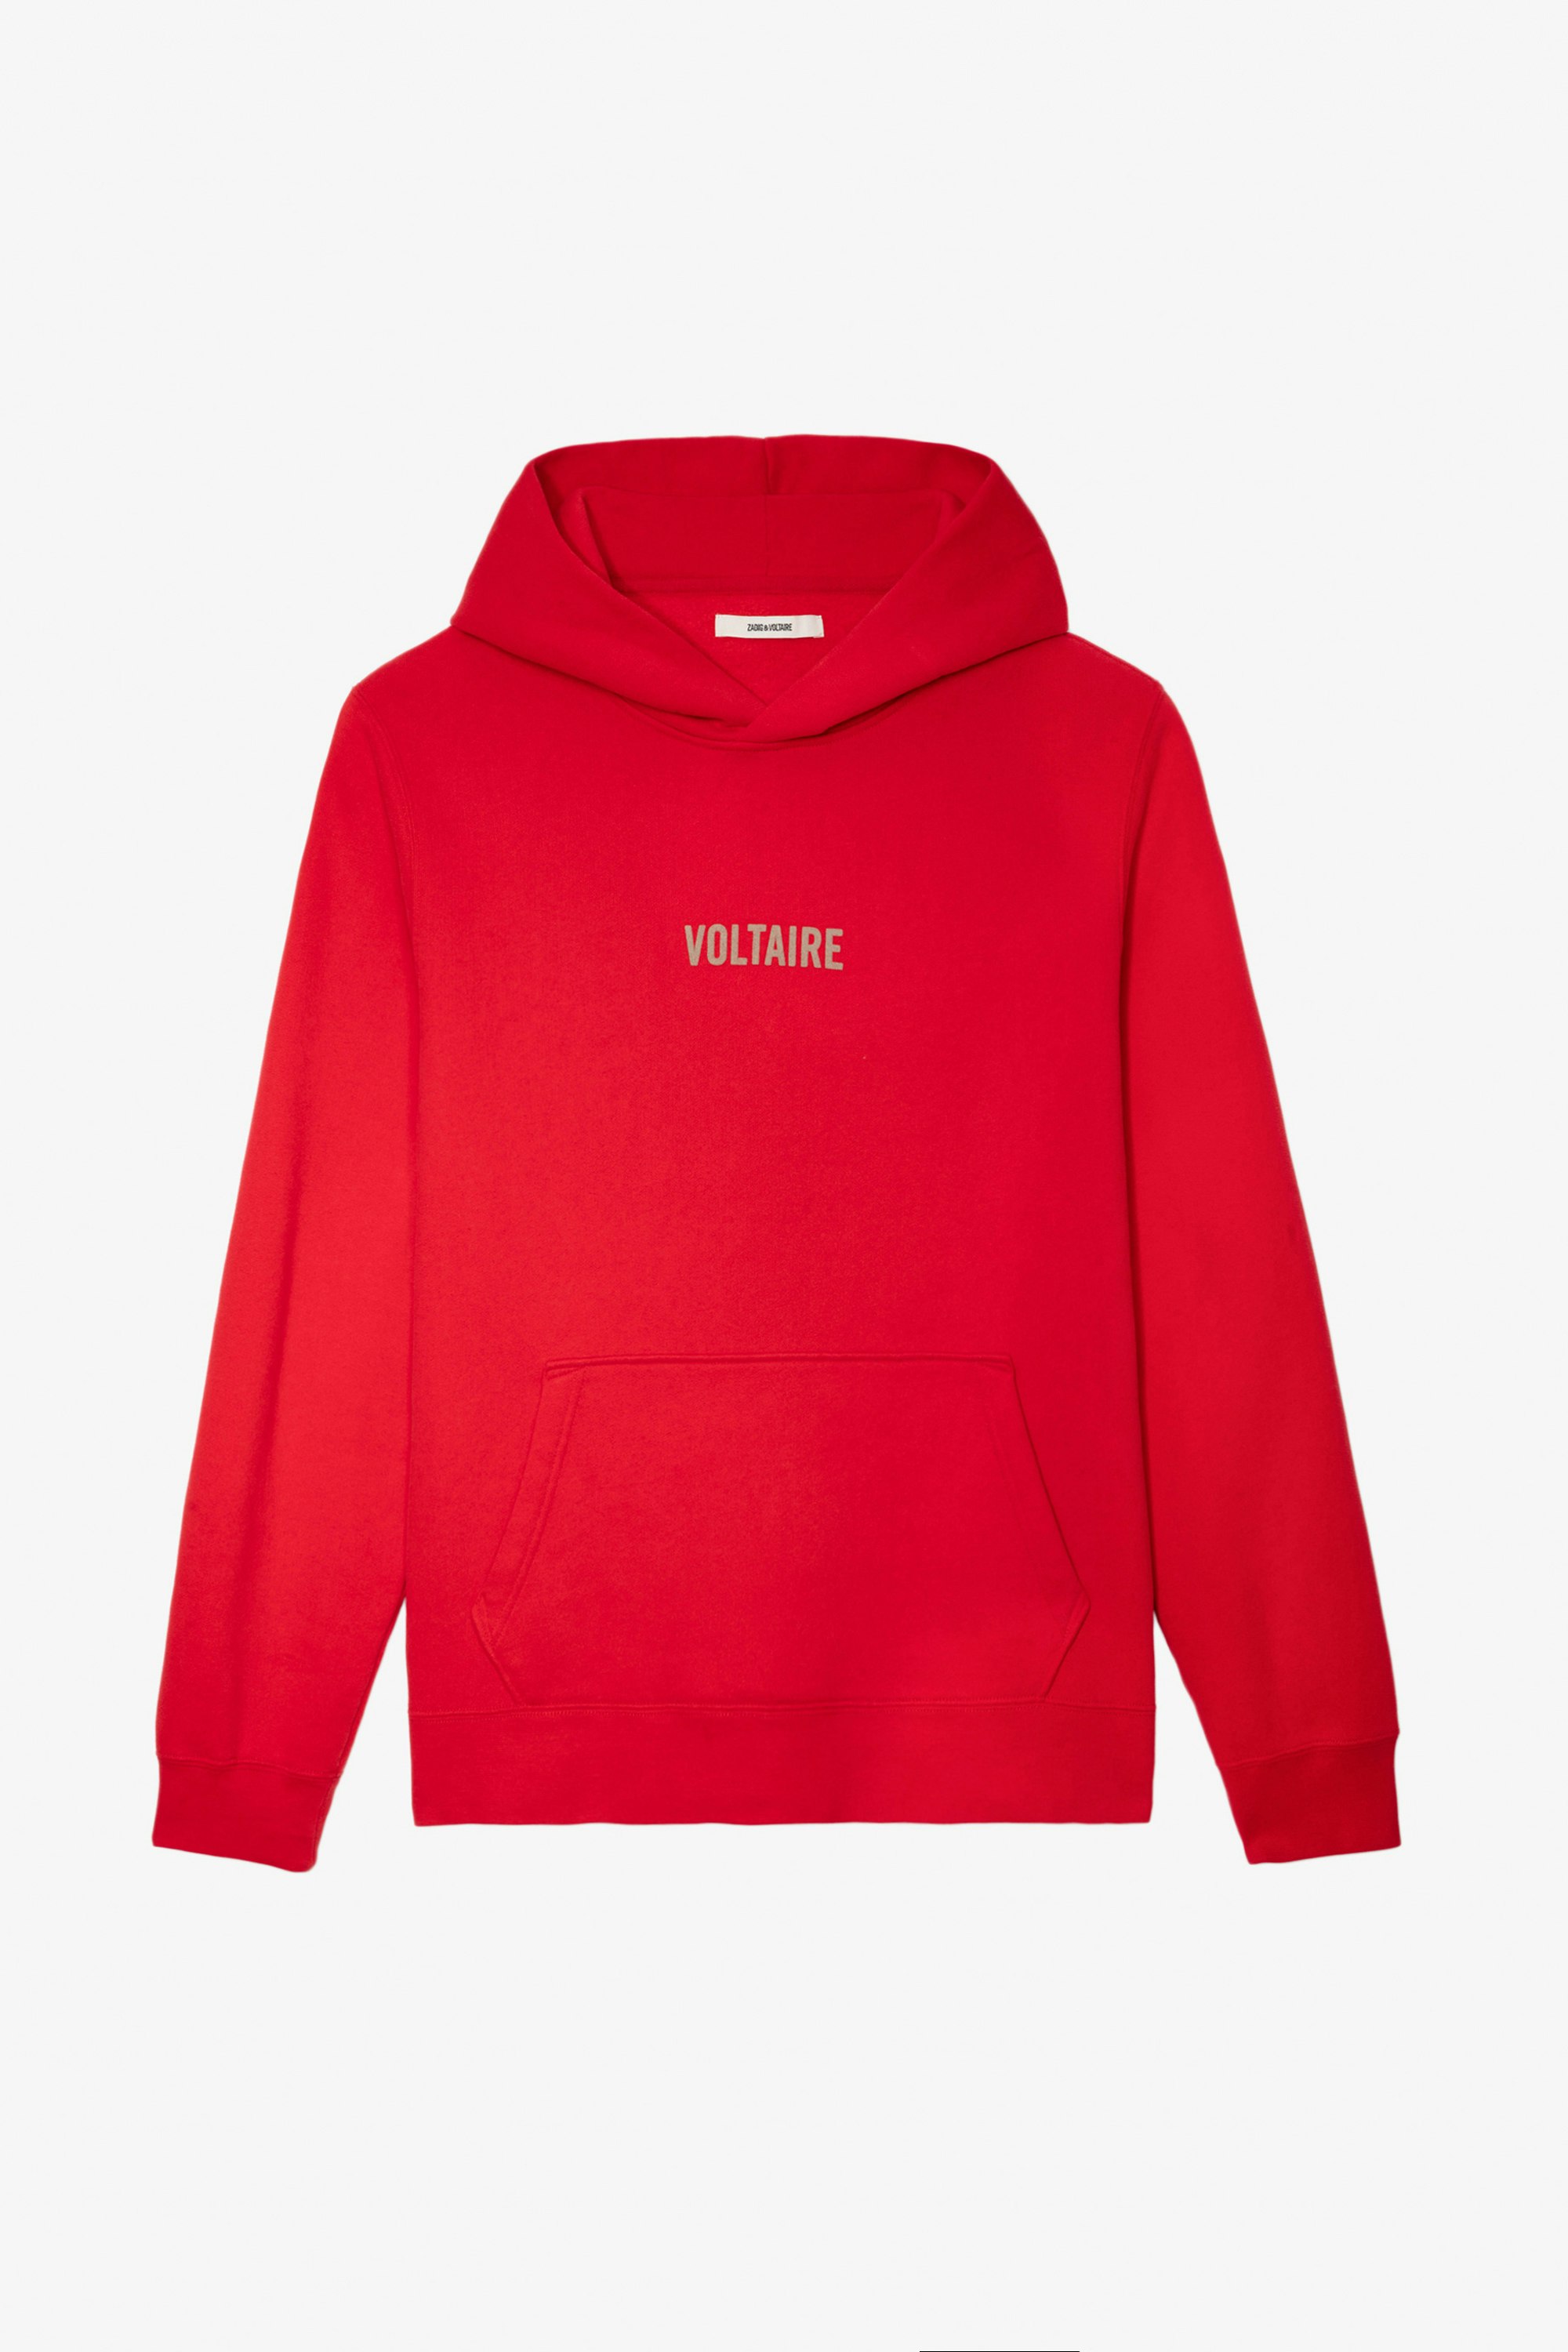 Sweatshirt Sanchi - Sweatshirt à capuche rouge orné d'une signature Voltaire et imprimé flèche.